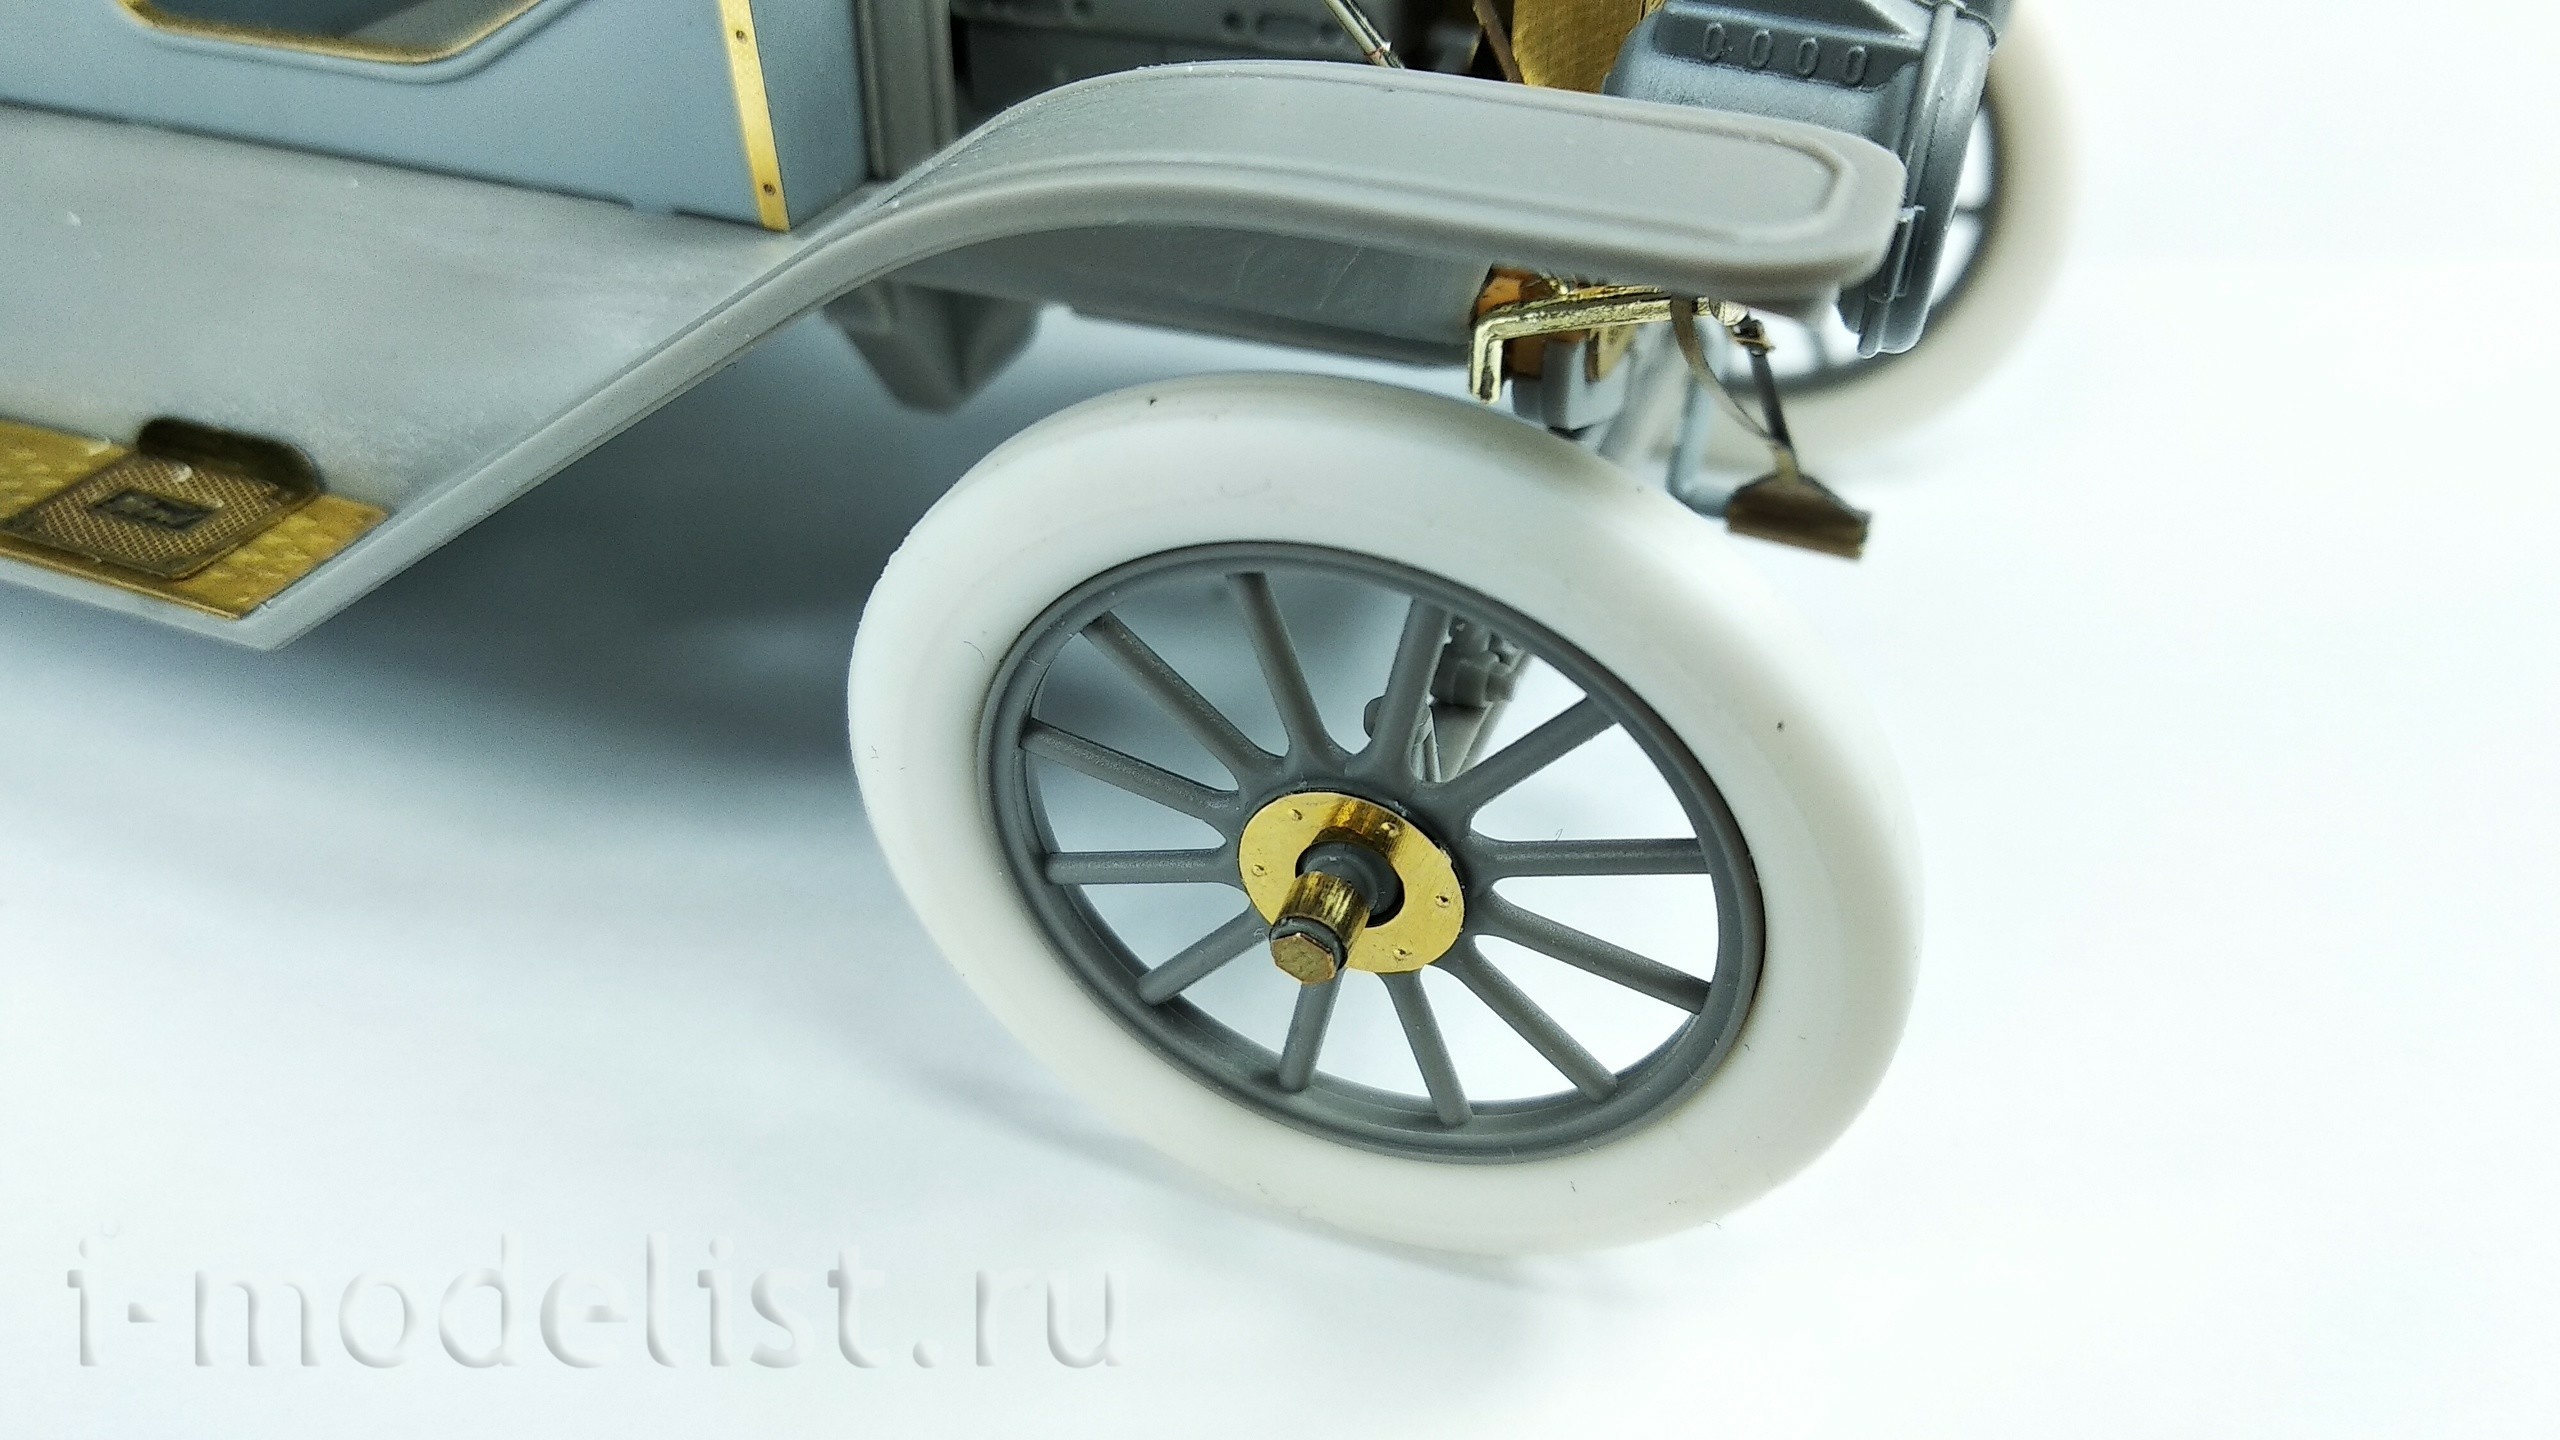 024206 Микродизайн 1/24 Набор фототравления Ford T Touring 1911 г. (ICM)